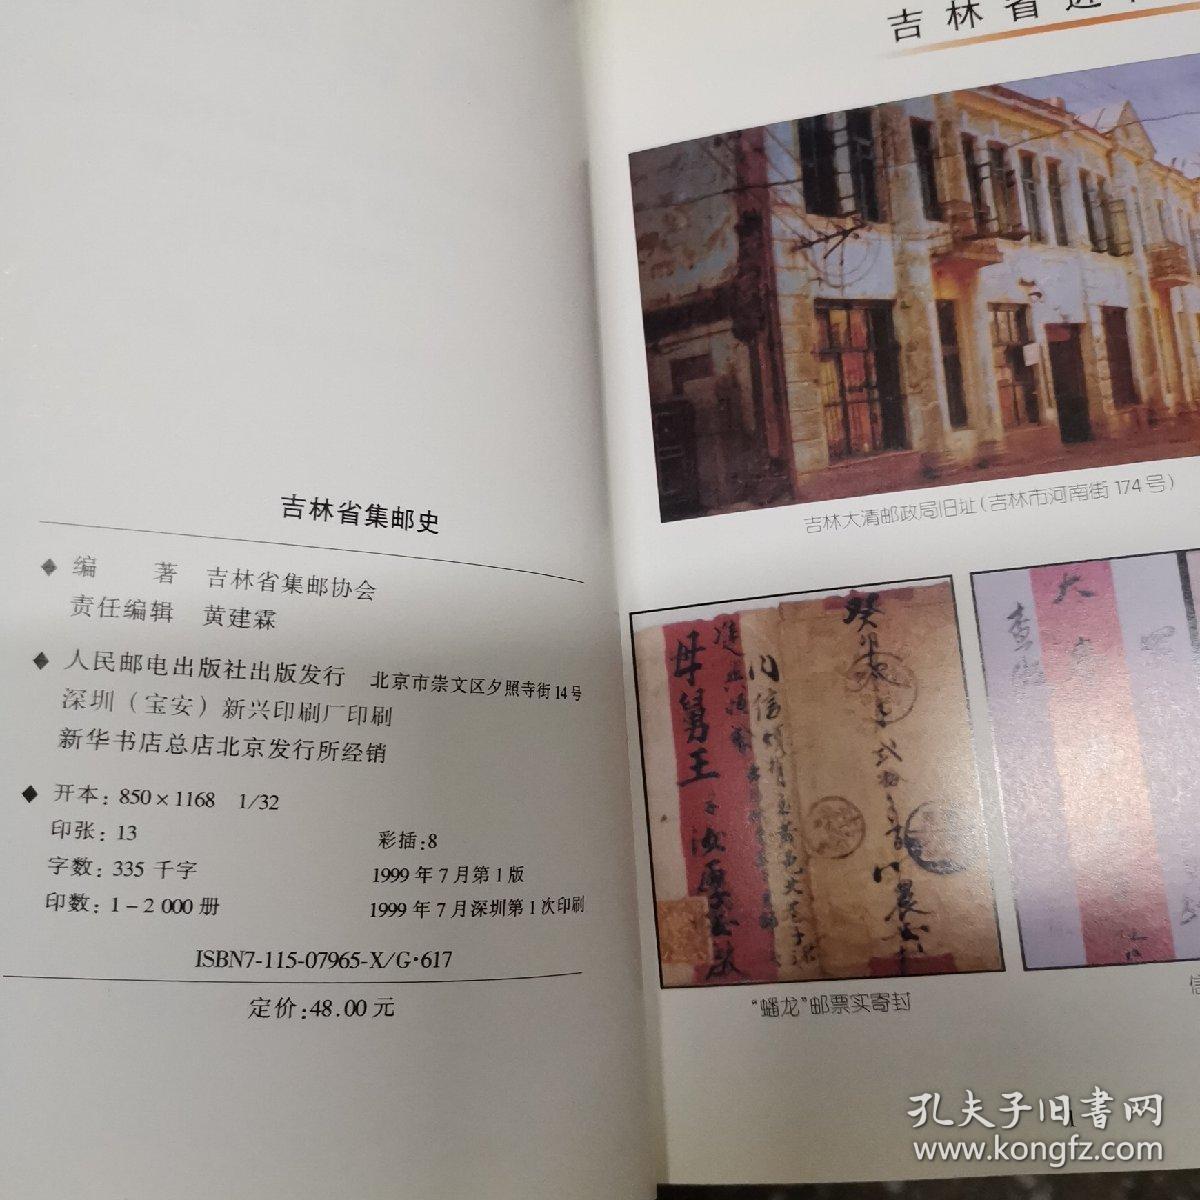 吉林省集邮史:1900-1997